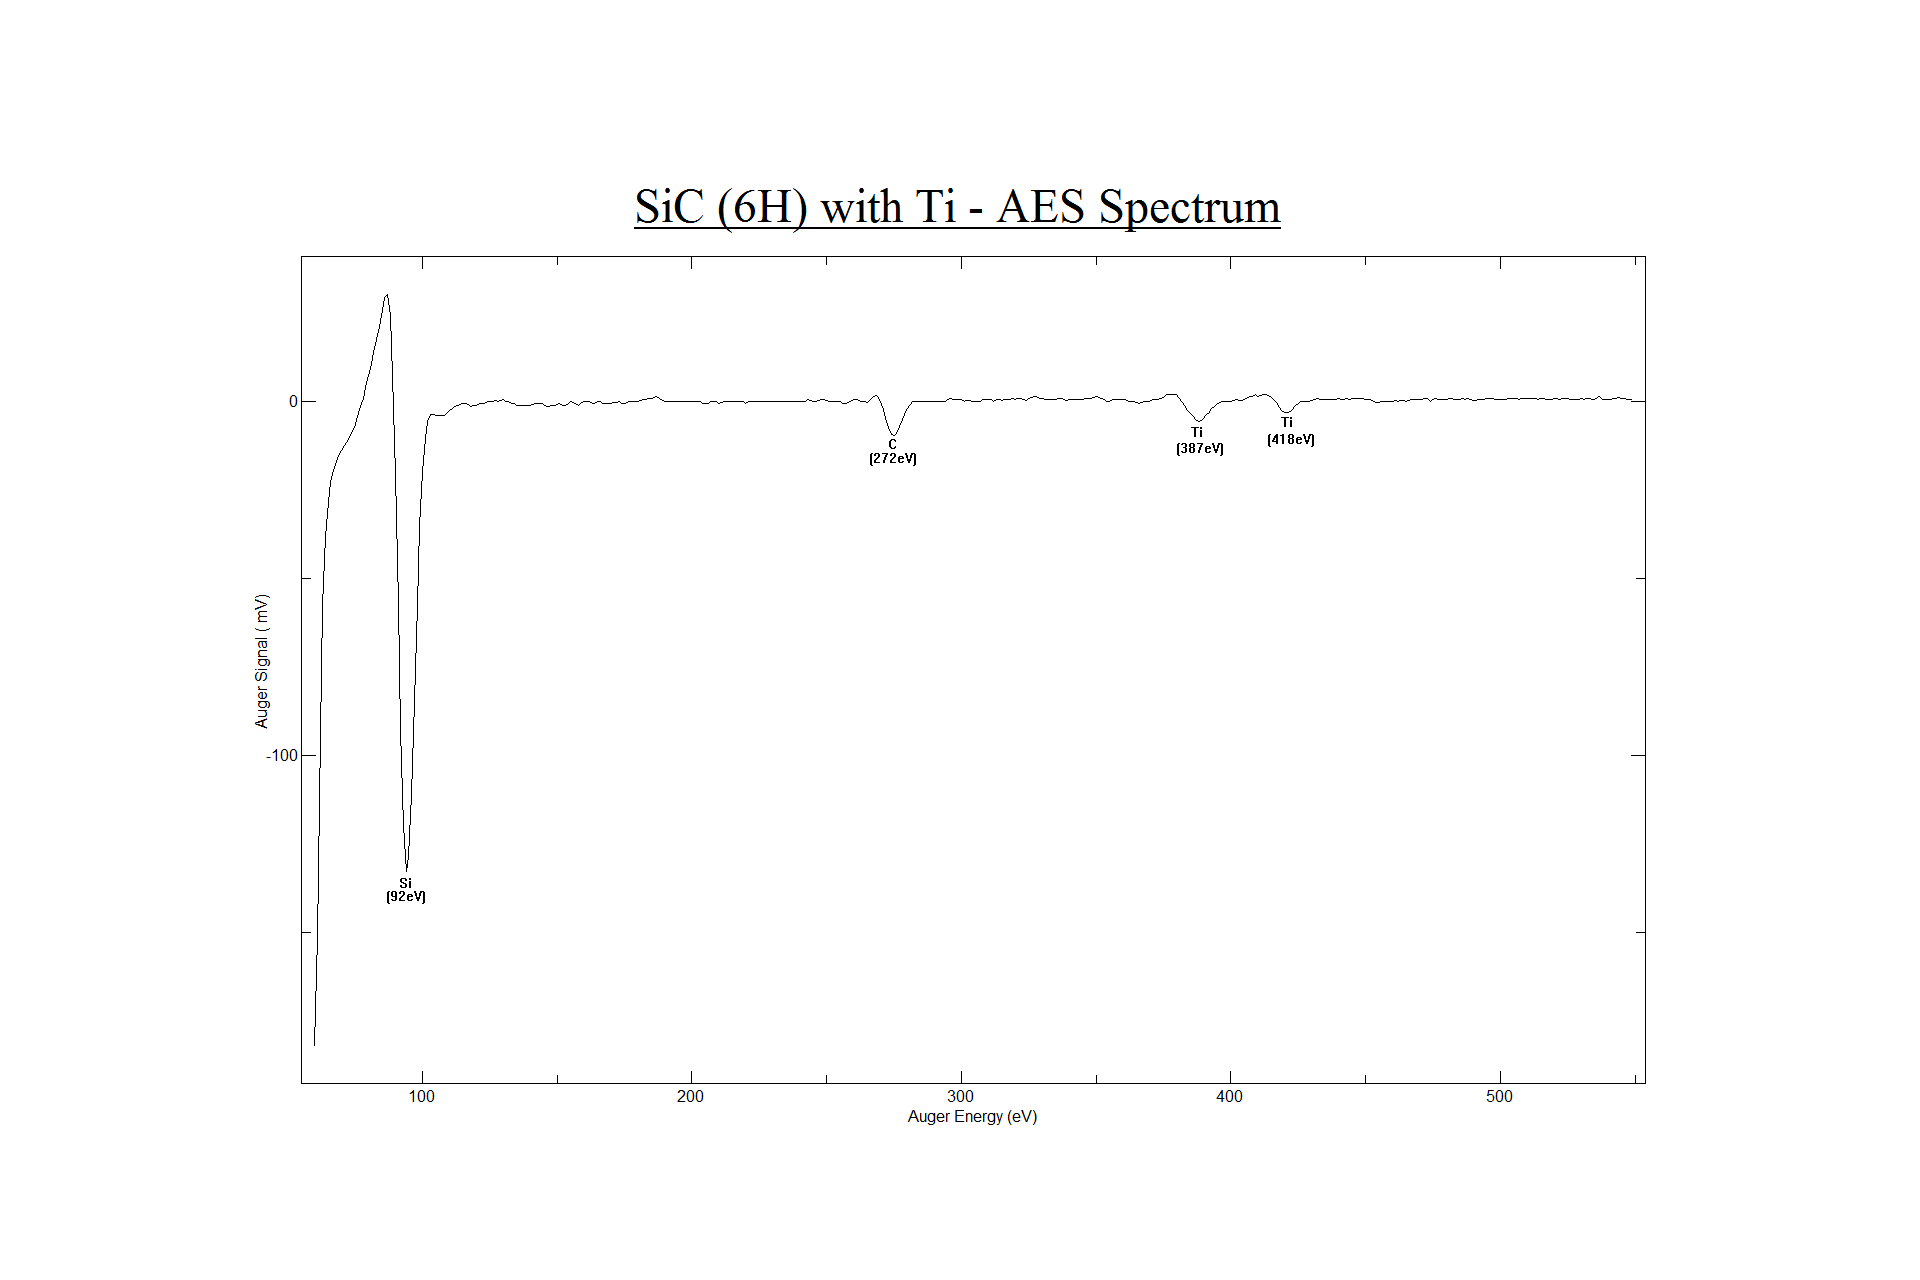 Figure 11. Auger Spectrum of Silicon Carbide 6H with Titanium. 